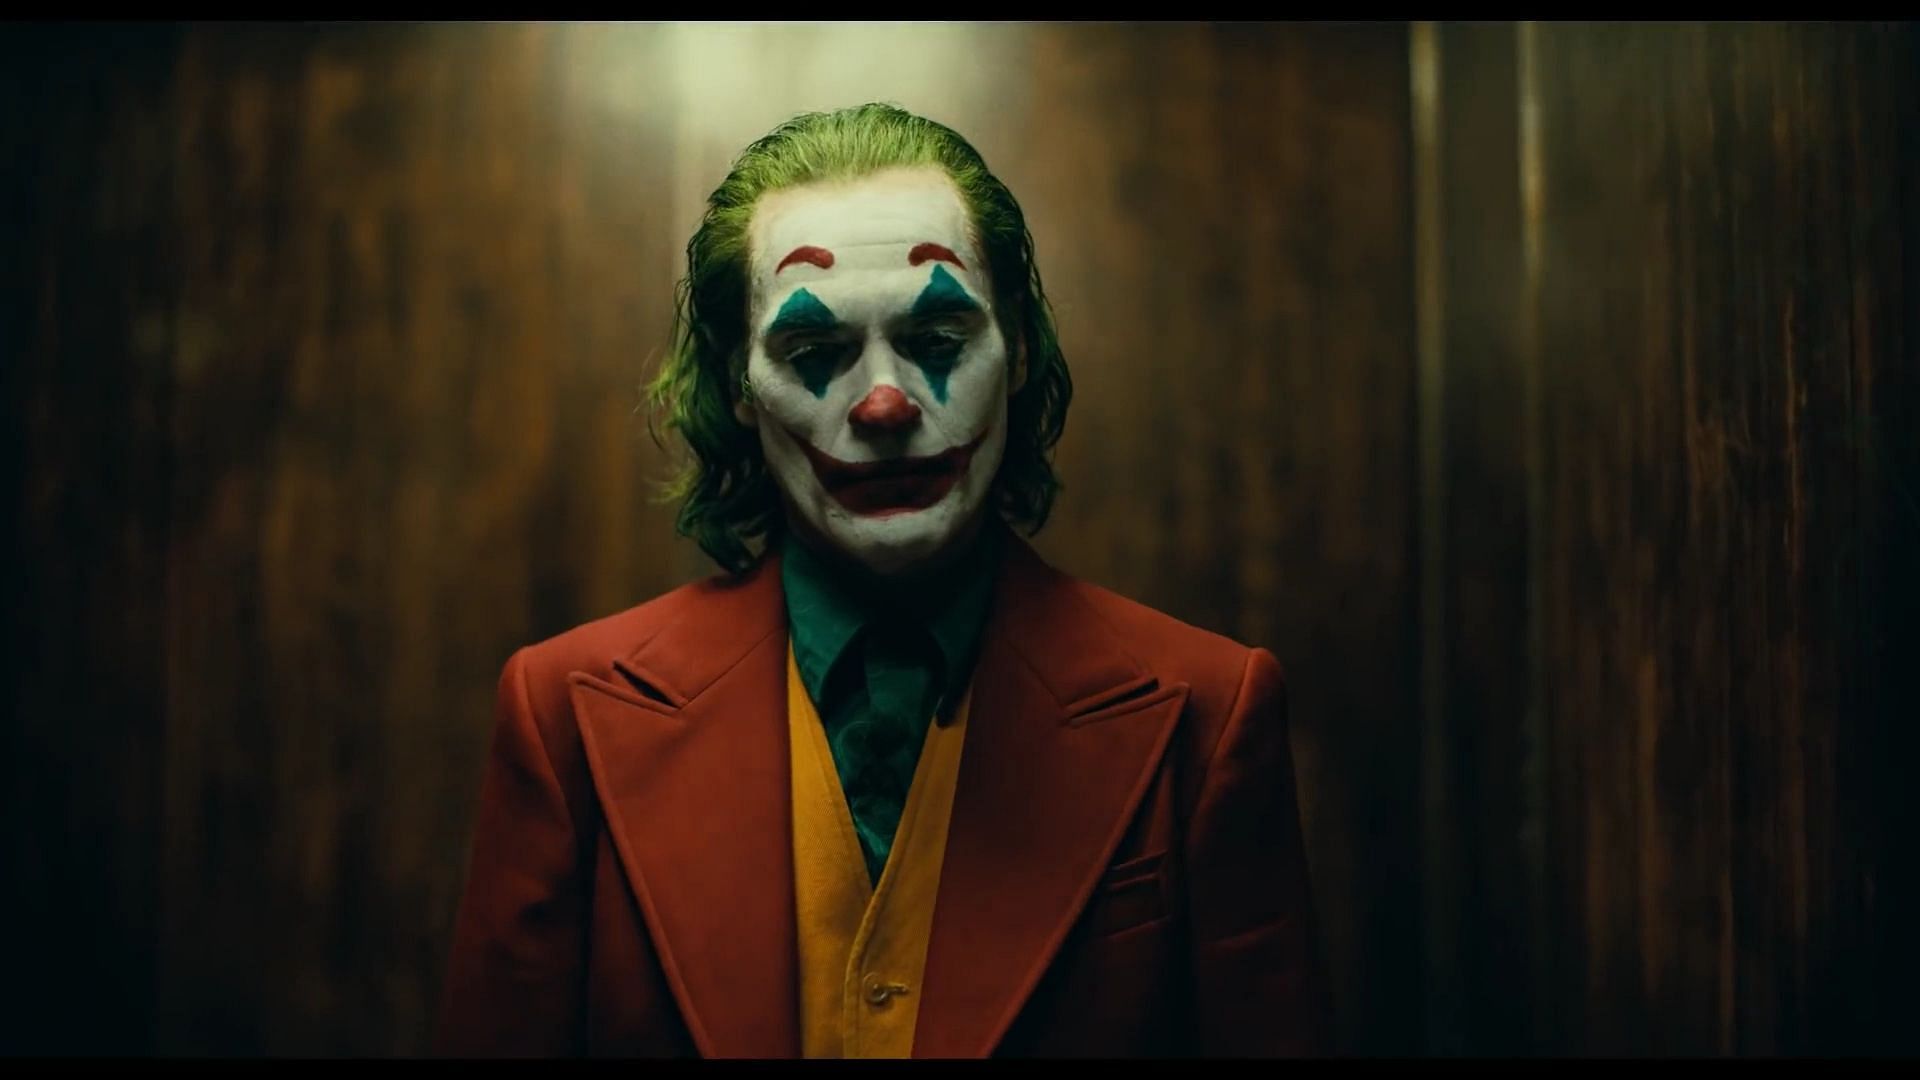 Joaquin Phoenix in and as Joker (Image via Warner Bros. Pictures)